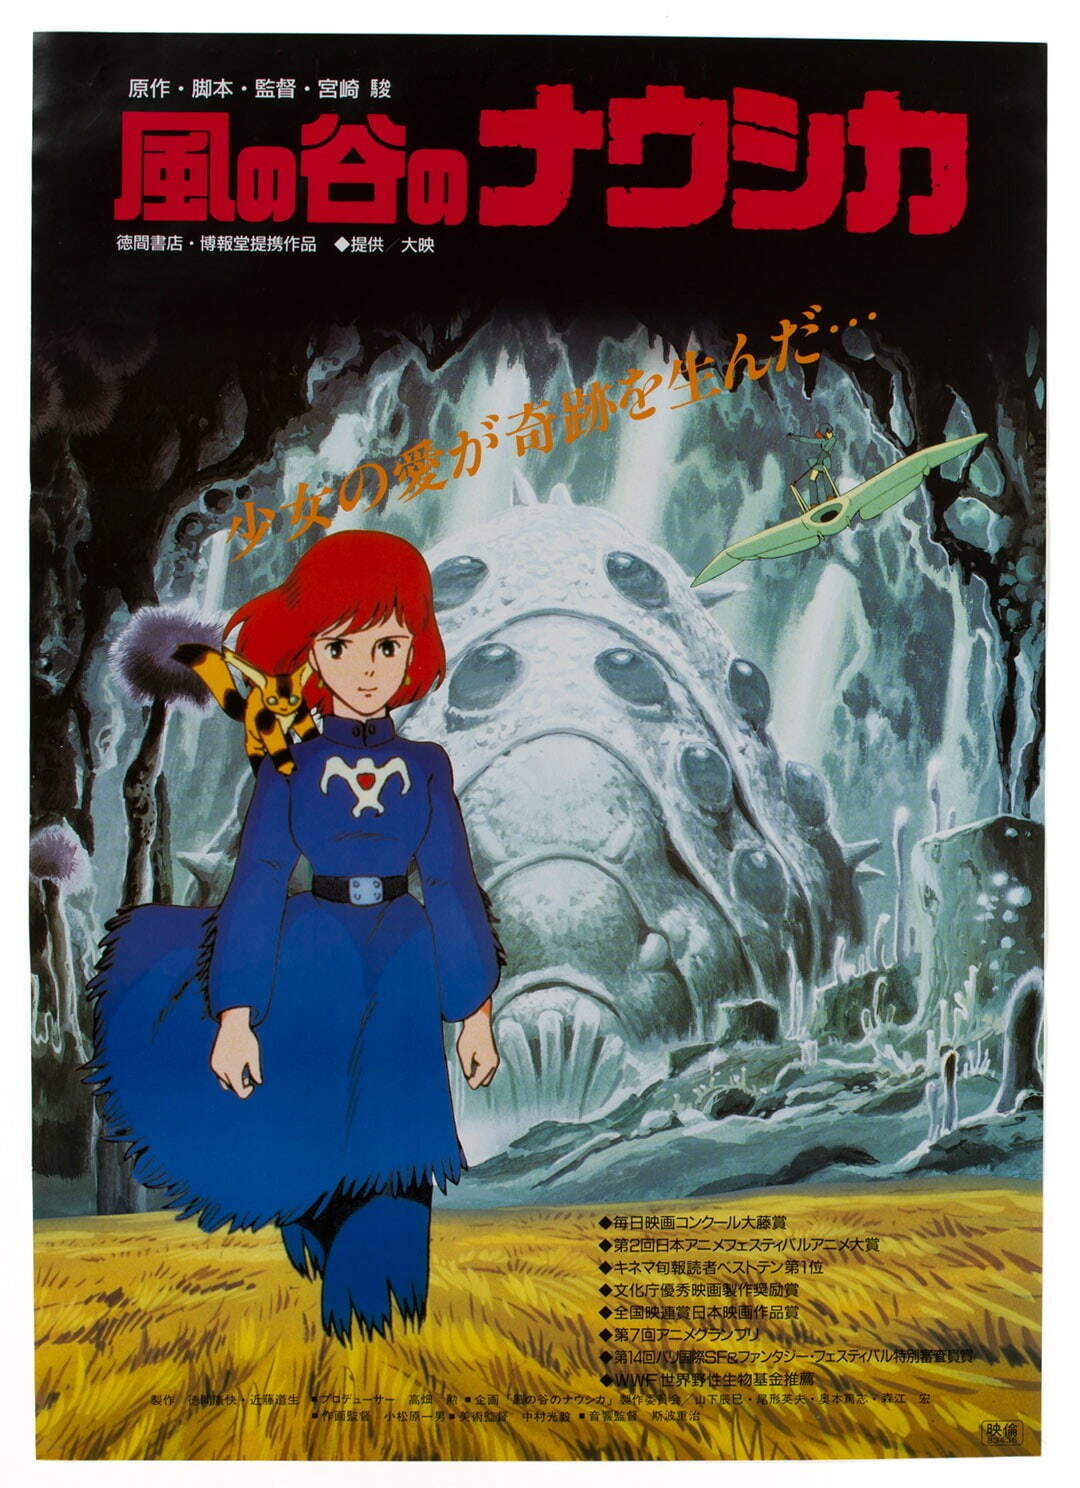 二次配給時の映画ポスター
「風の谷のナウシカ」
© 1984 Studio Ghibli・H